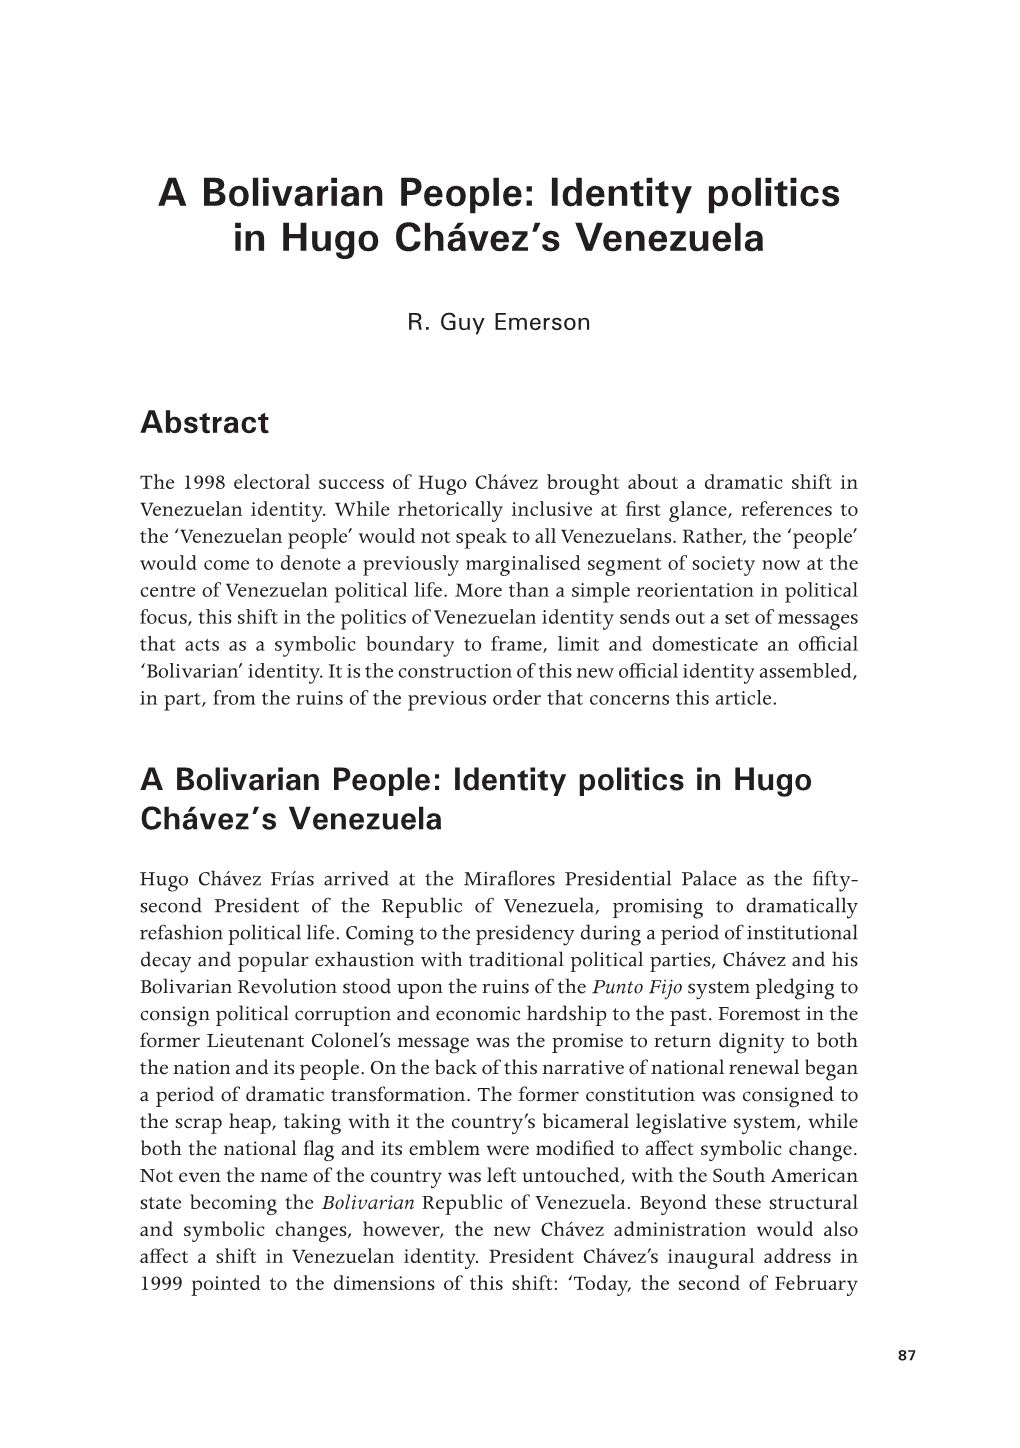 Identity Politics in Hugo Chávez's Venezuela